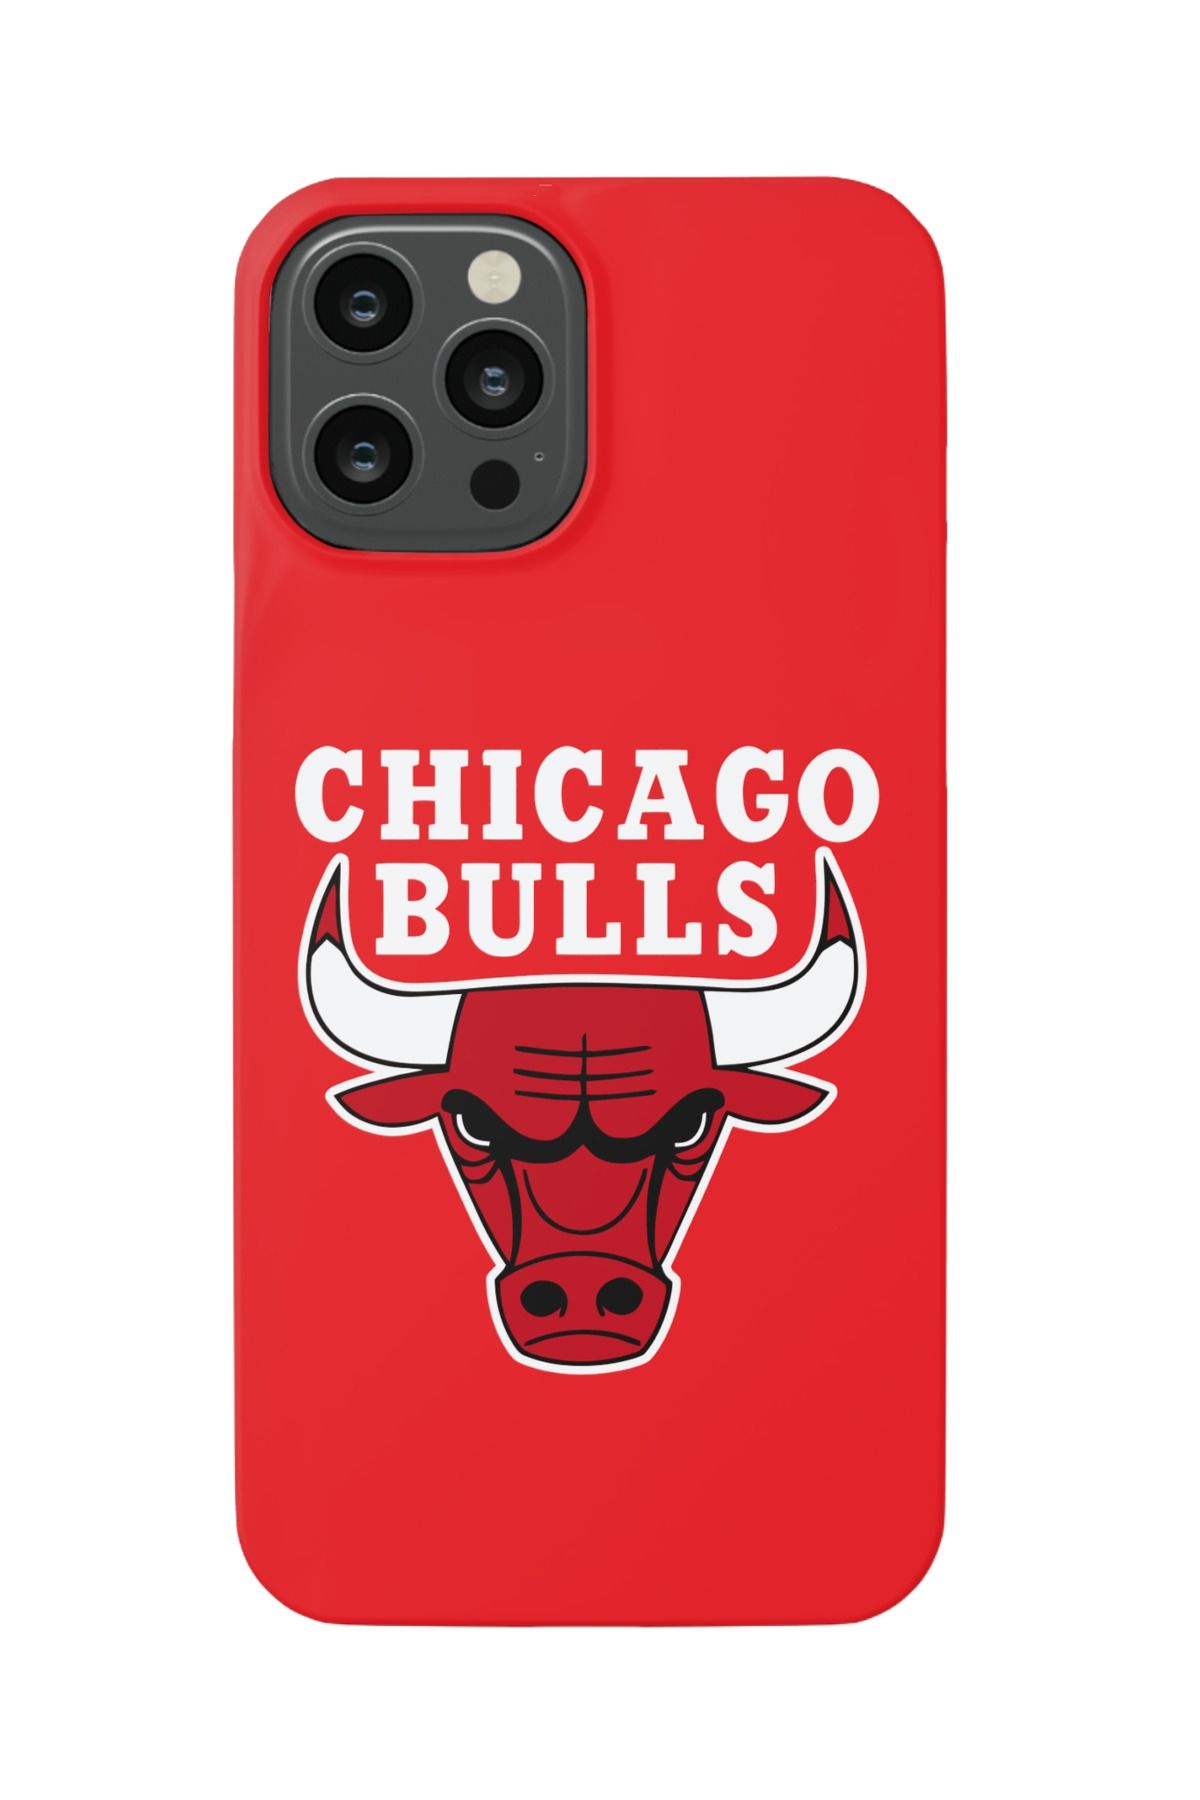 izzytech İphone 12 Pro Max Telefon Kılıfı Ile Uyumlu Chicago Bulls Tasarımlı Darbeye Dayanıklı